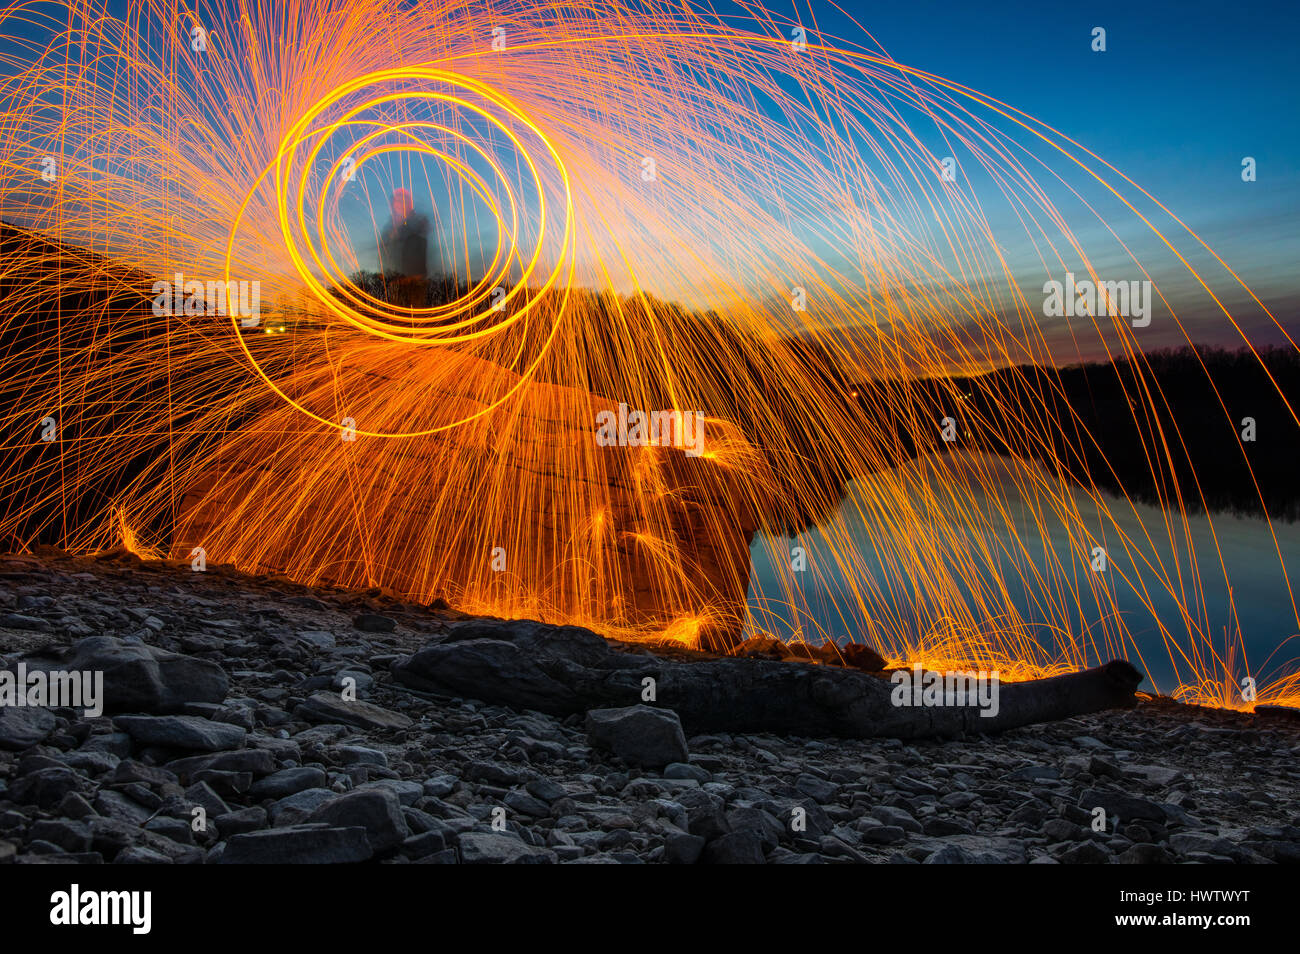 Eine Person steht auf einem Felsen gegen einen See in der Abenddämmerung Spinnerei Stahlwolle auf Feuer mit fliegen in alle Richtungen Funken. Stockfoto